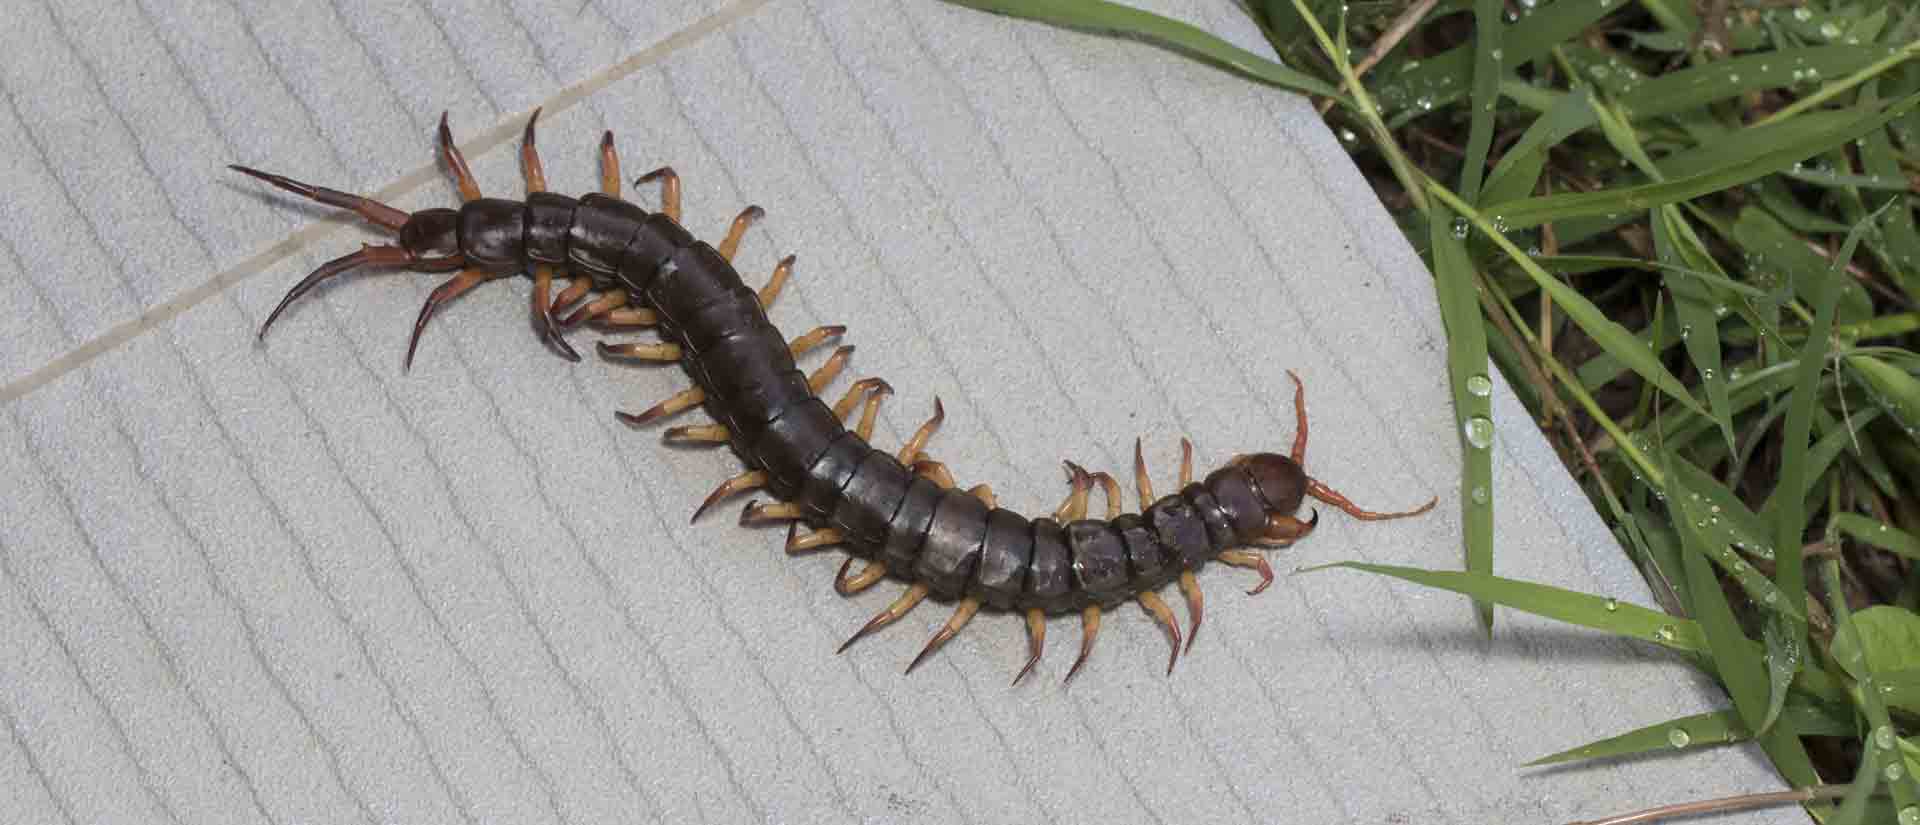 centipede pest control granite hills